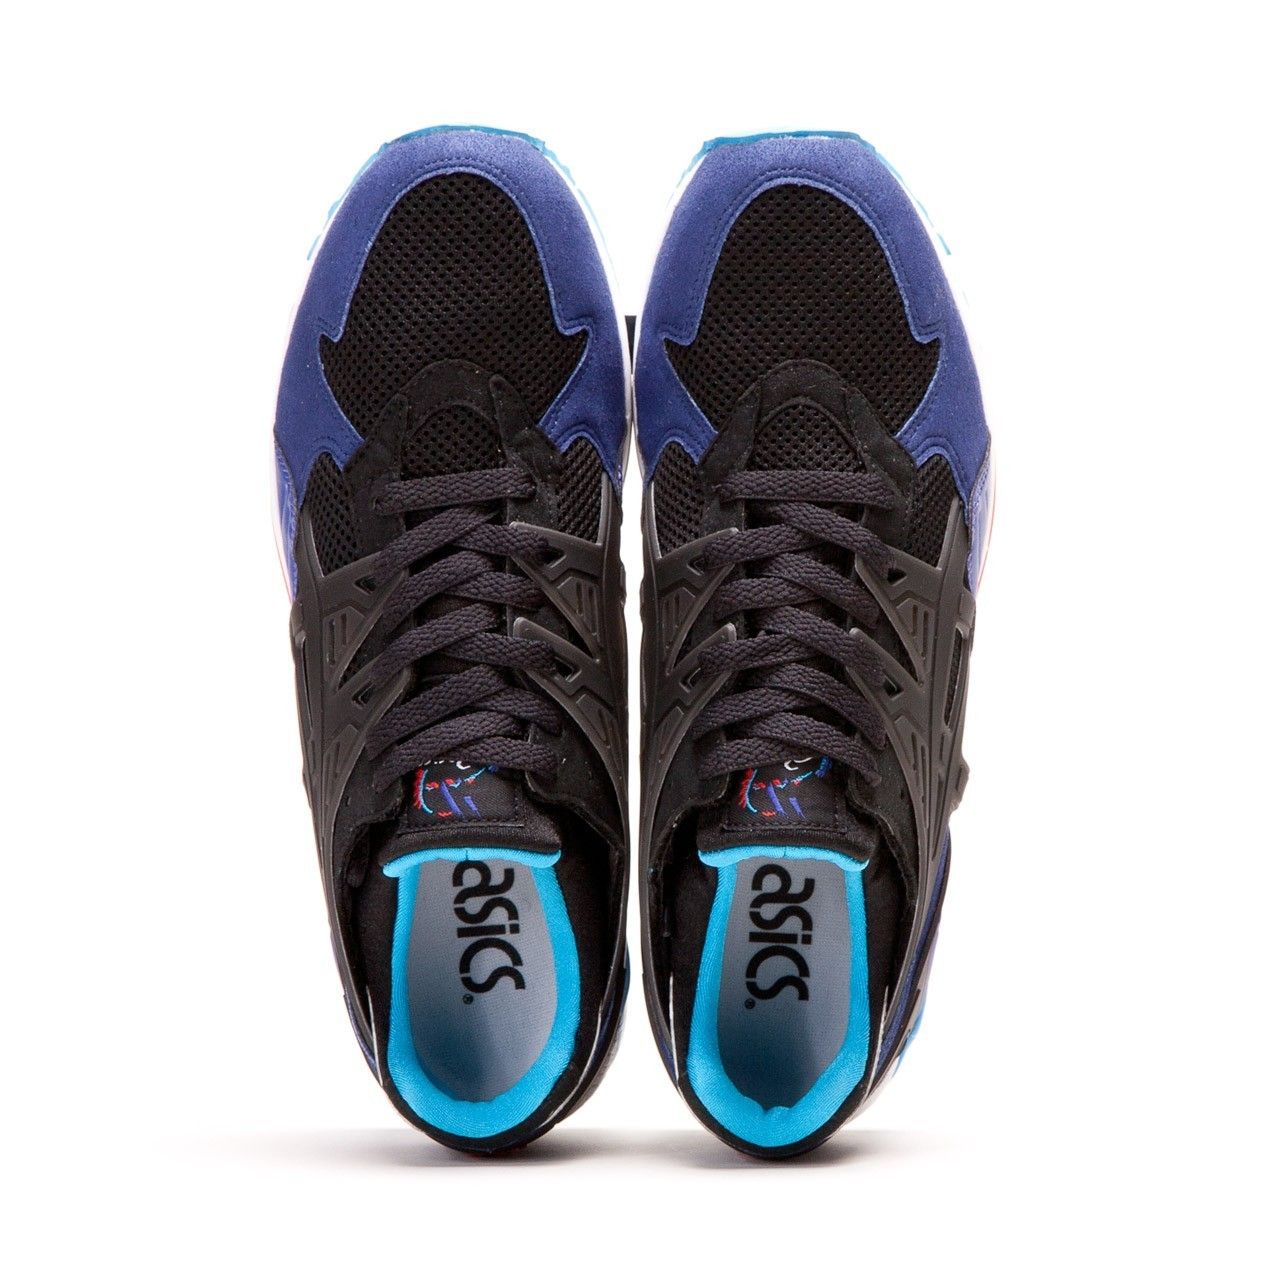 Asics Gel-Kayano Trainer black/purple Мъжки спортни обувки H4A2N-9090